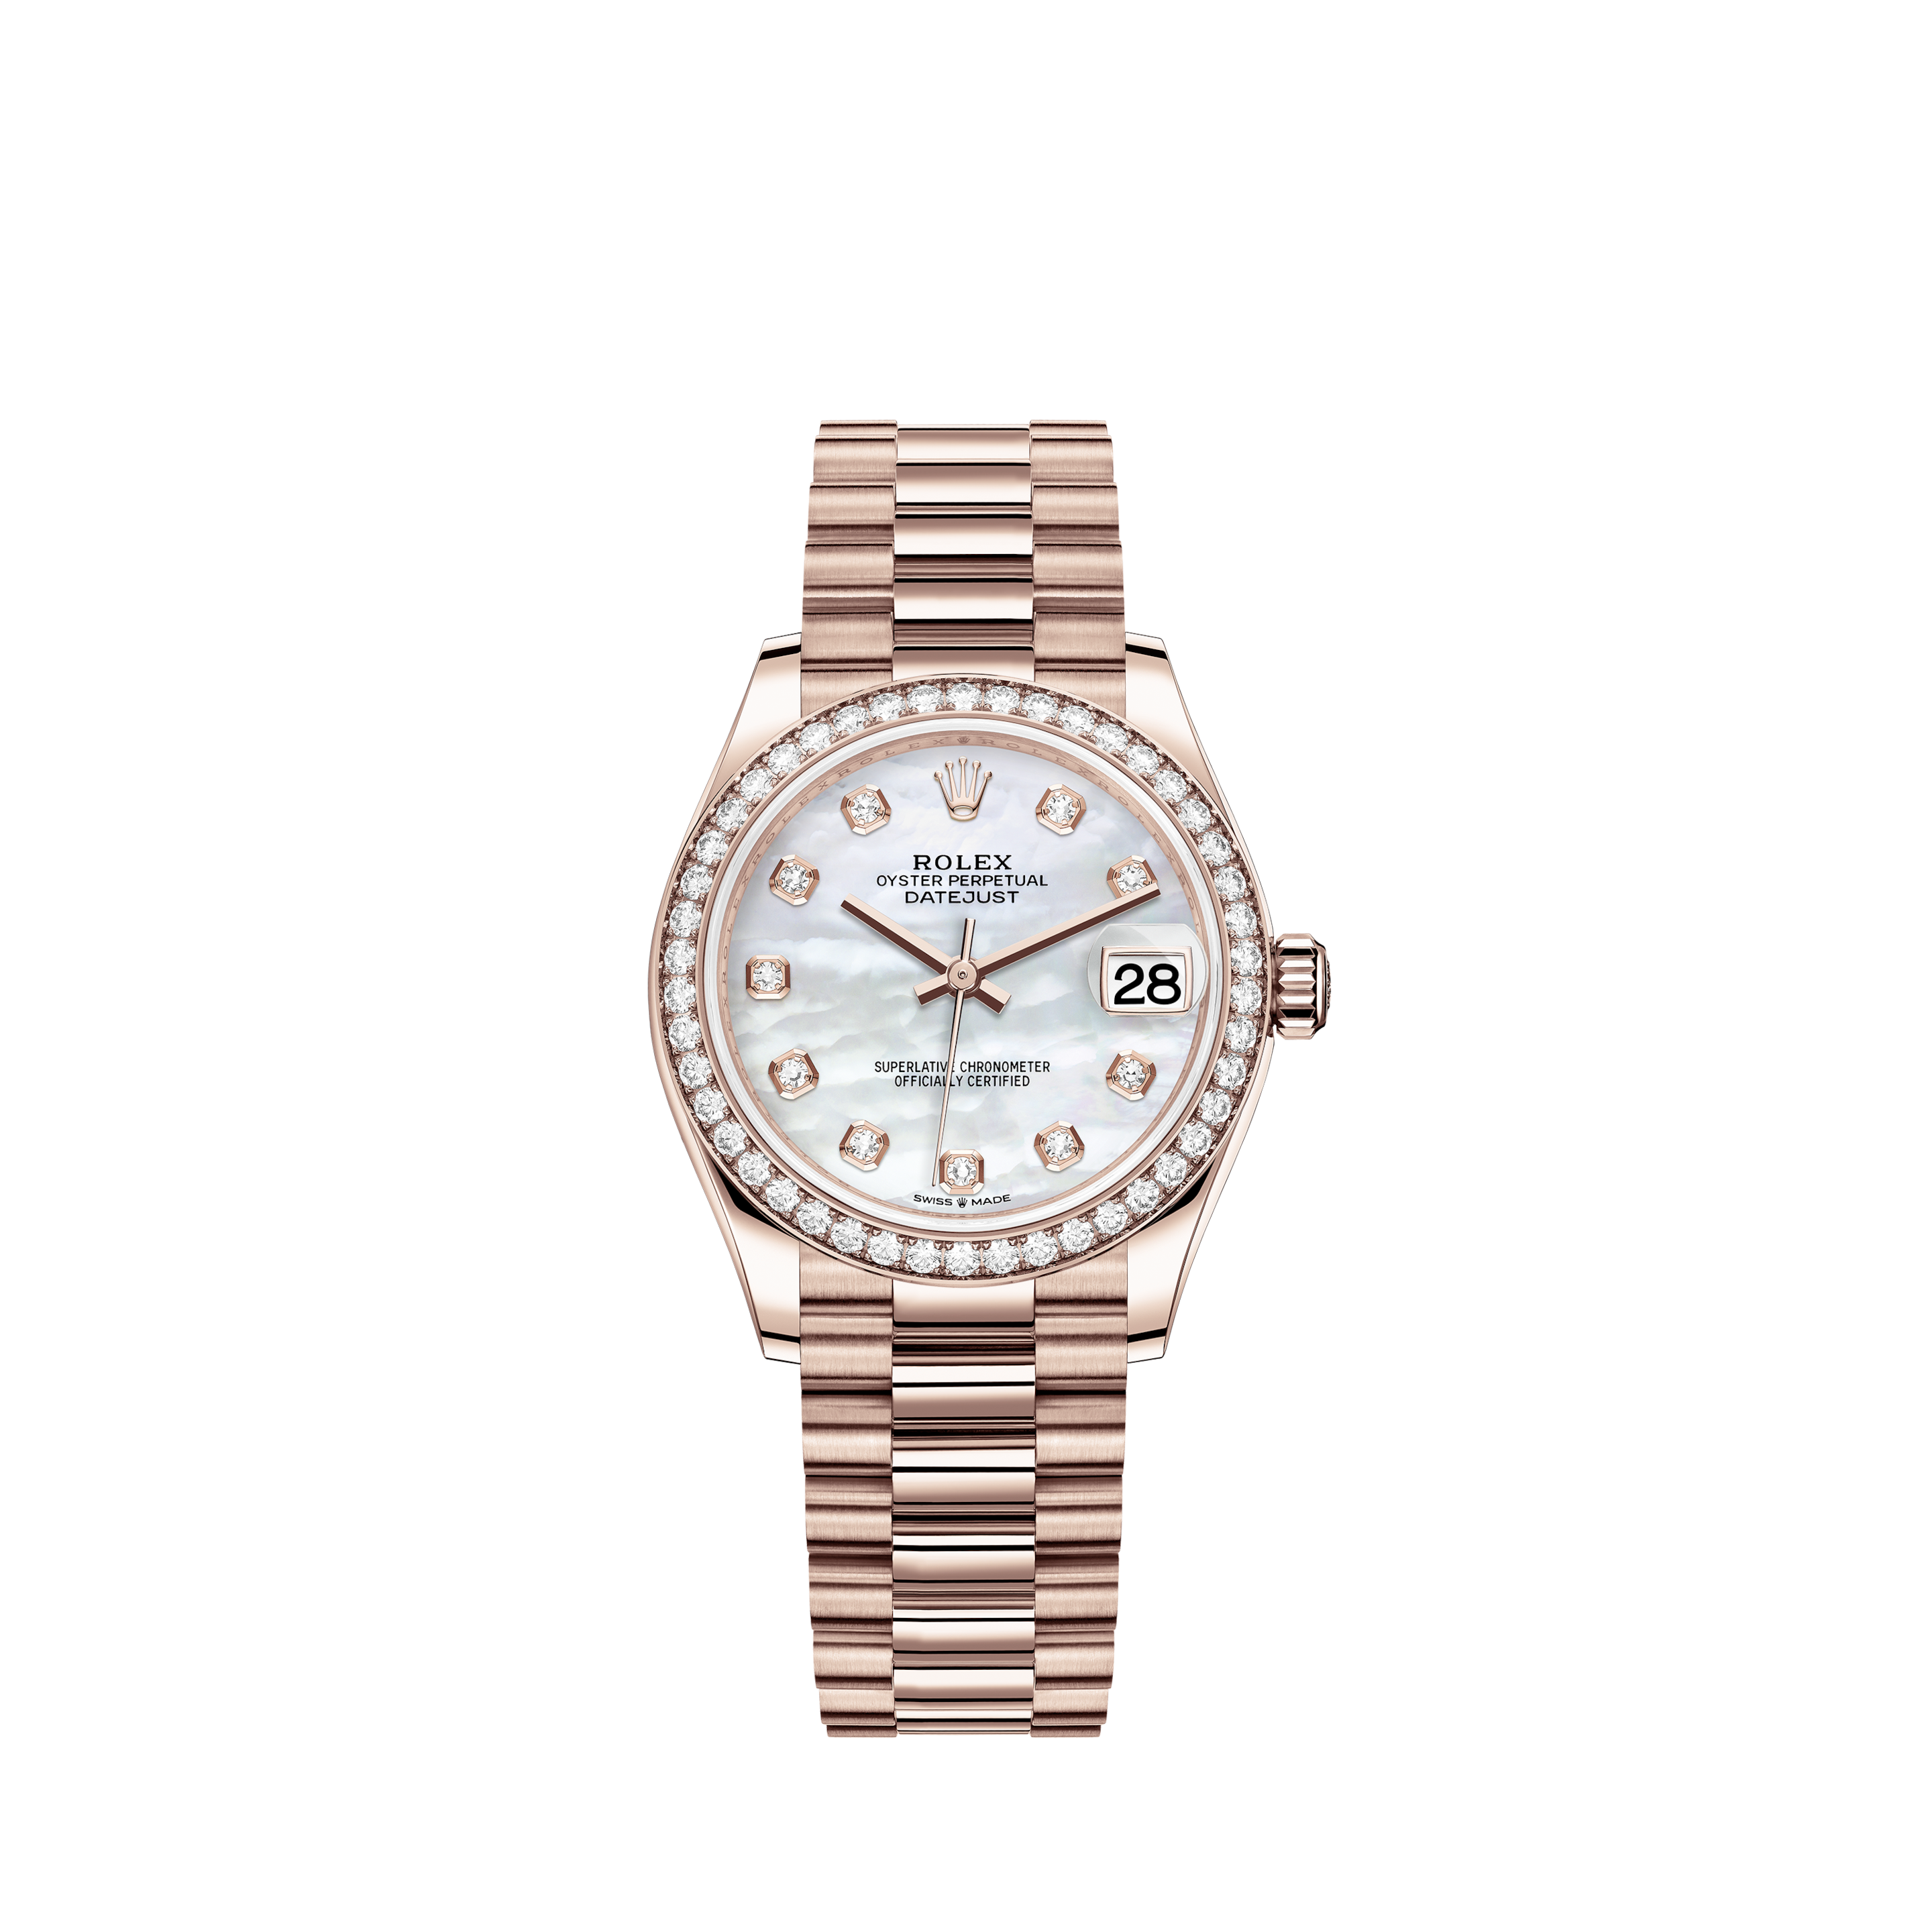 Rolex 16710 GMT-Master II “Coke” Stainless Steel Watch